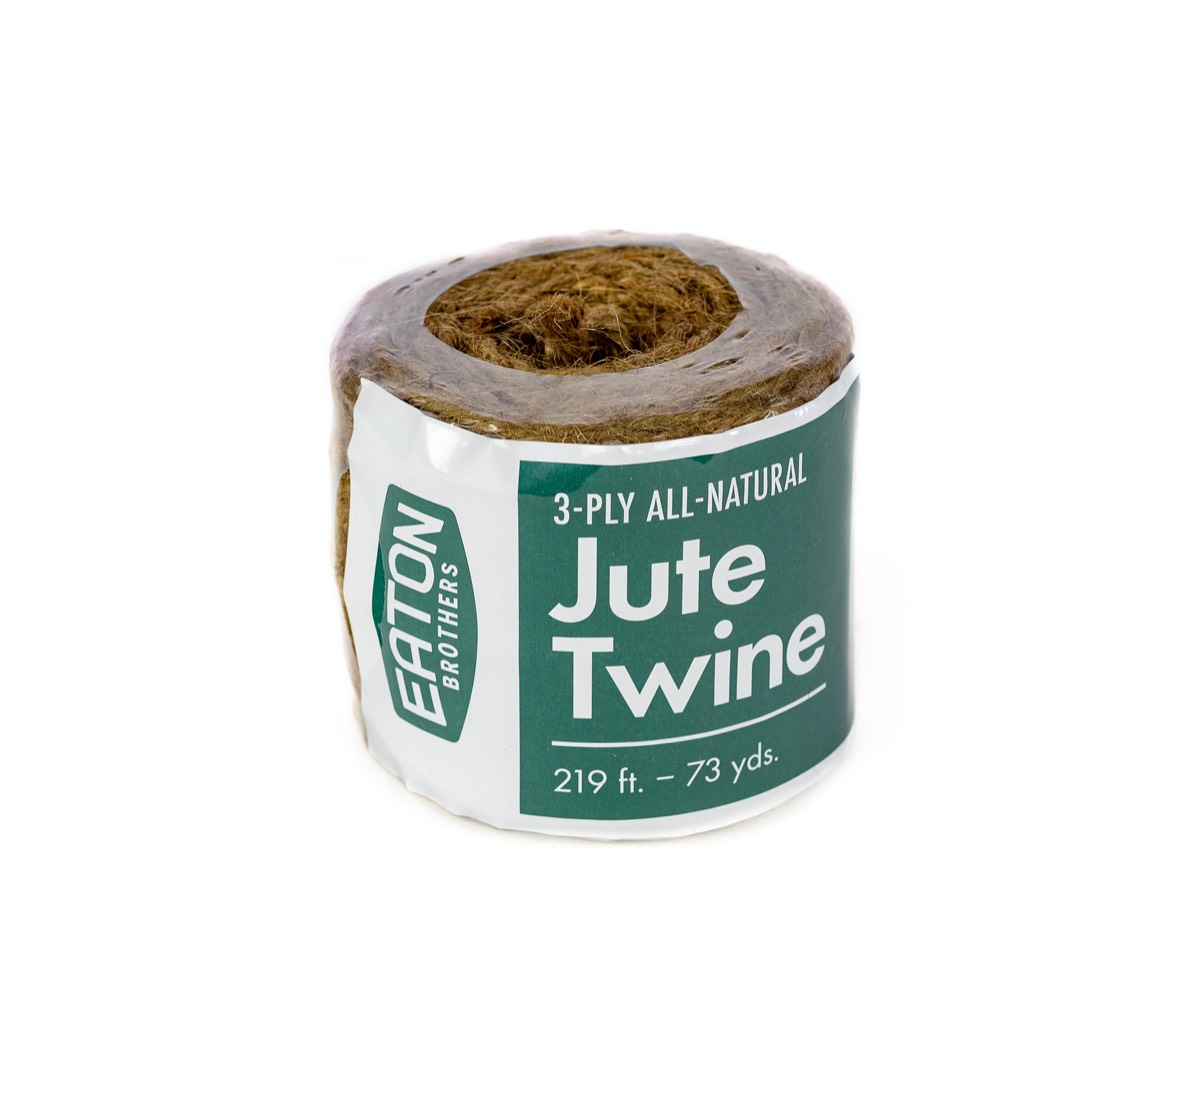 3 Ply Jute Twine, Green Jute Twine